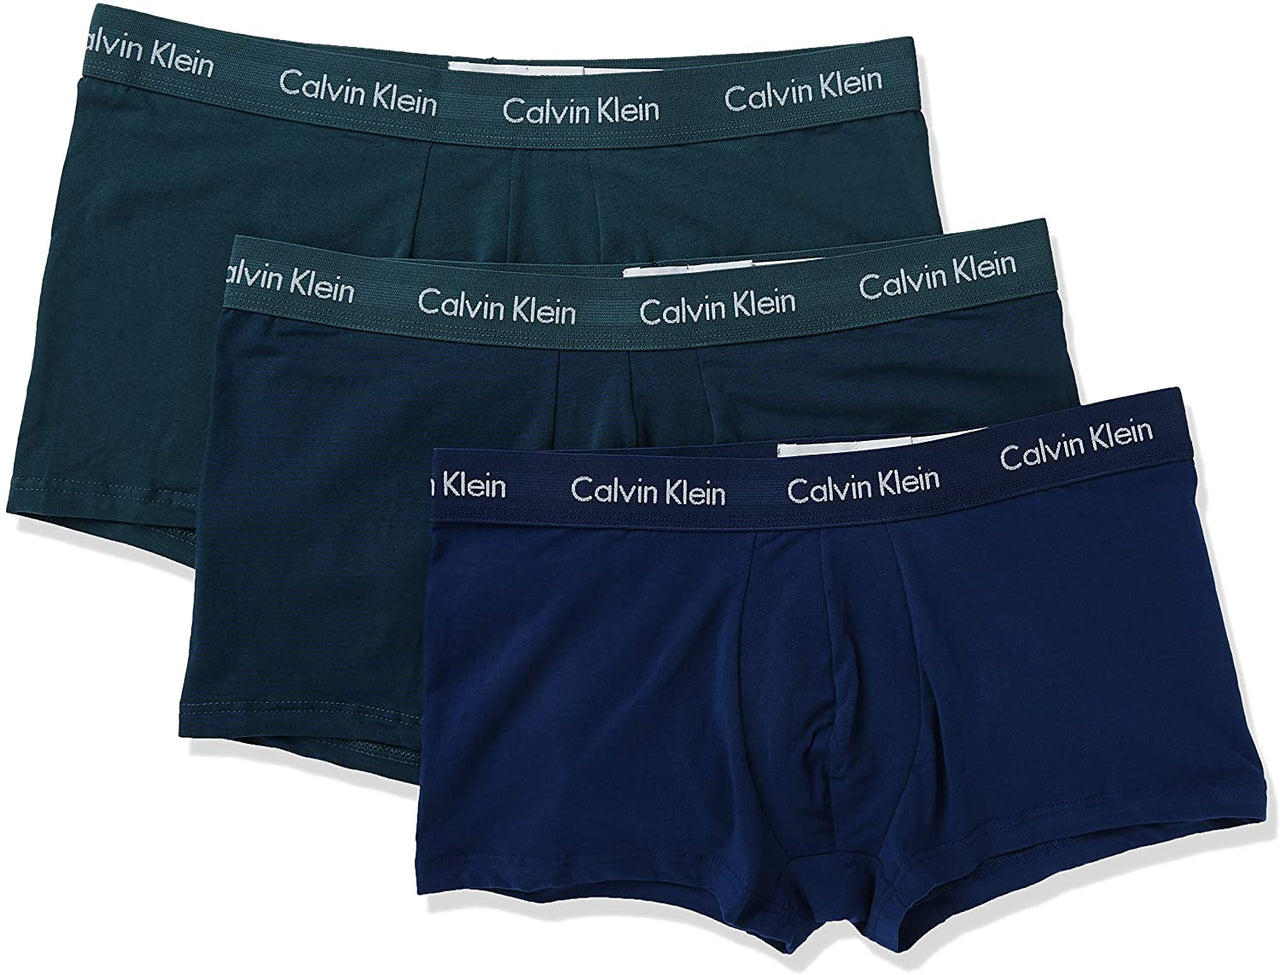 Calvin Klein Men's Underwear Cotton Stretch Low-Rise Trunks 3 Pack ...